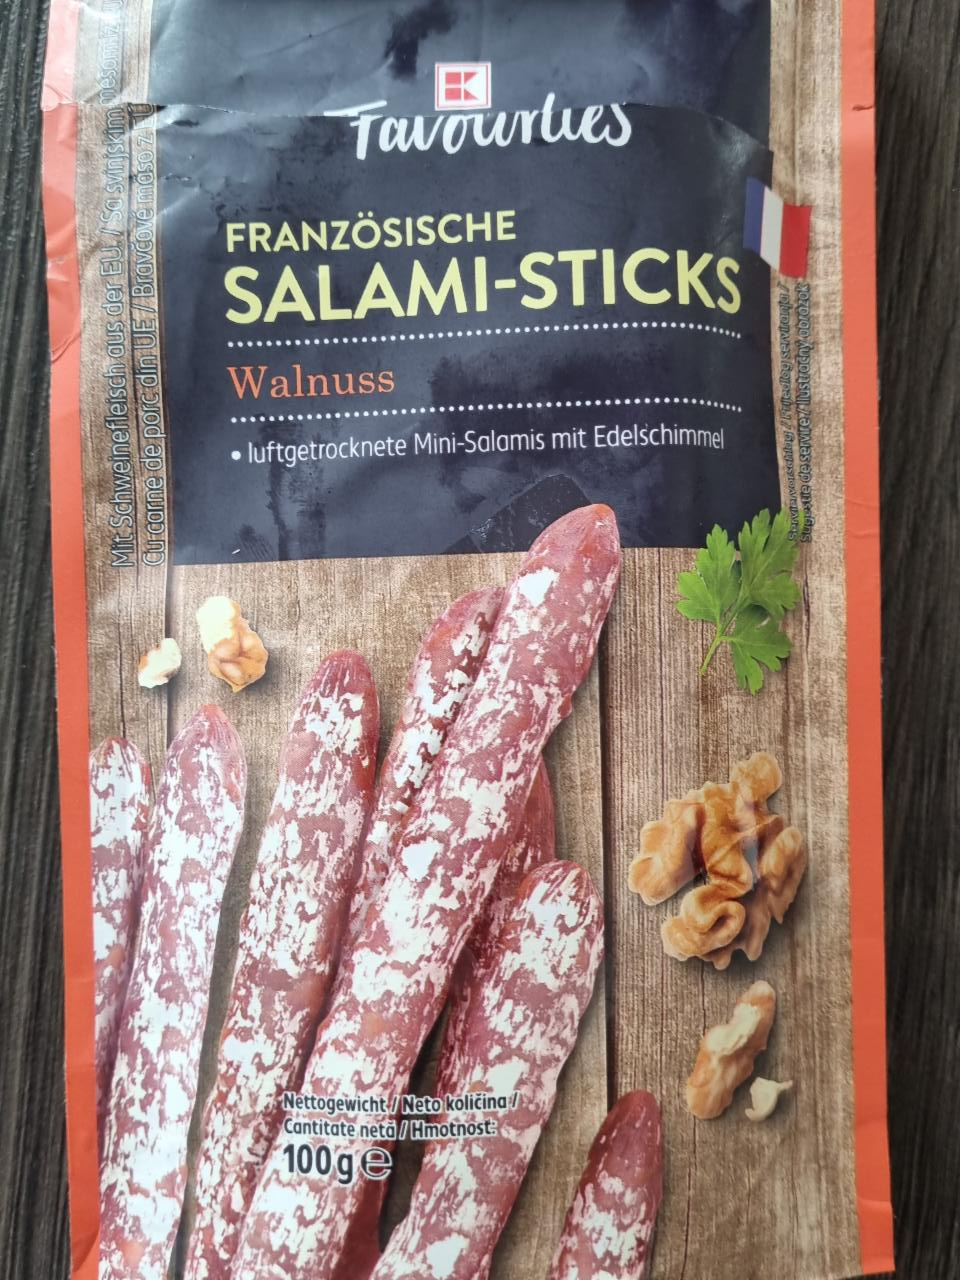 Fotografie - franzosische salami-sticks K-Favourites